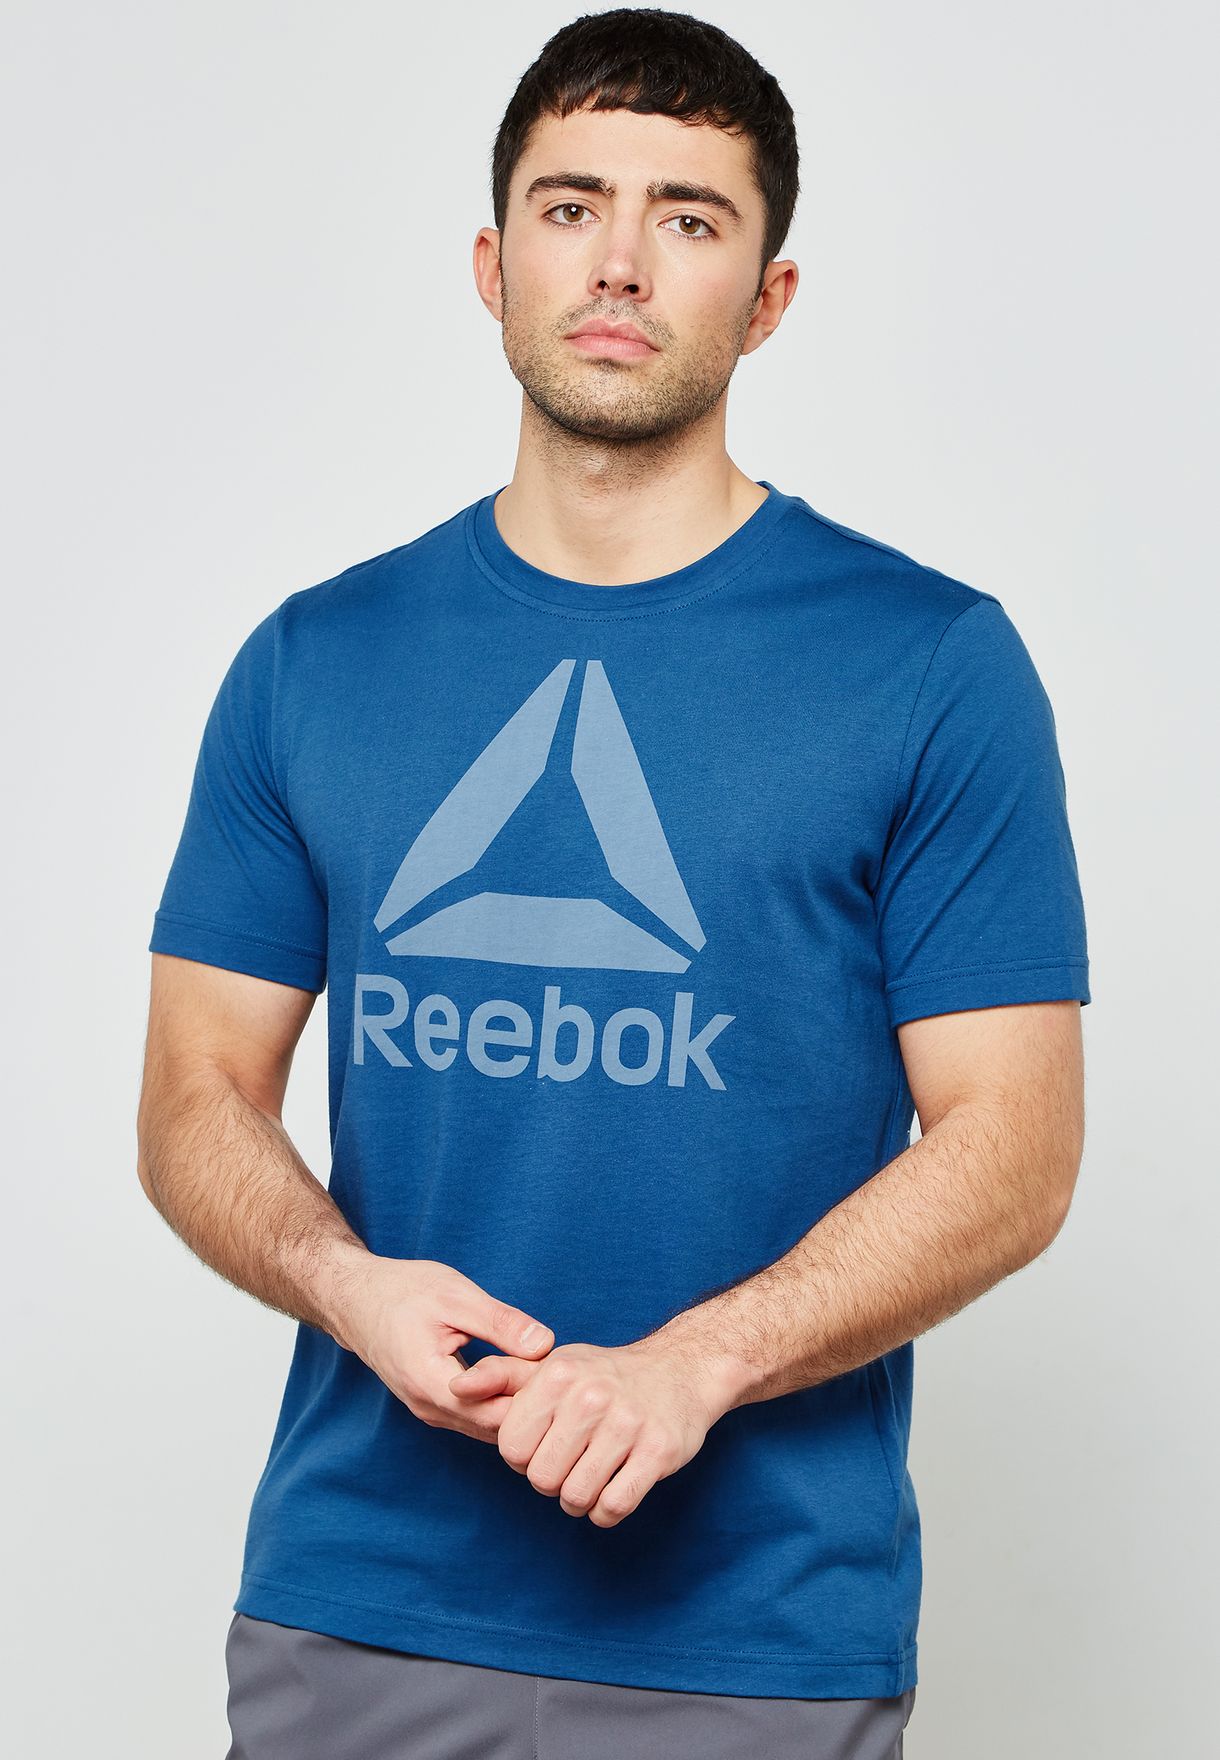 reebok blue shirt